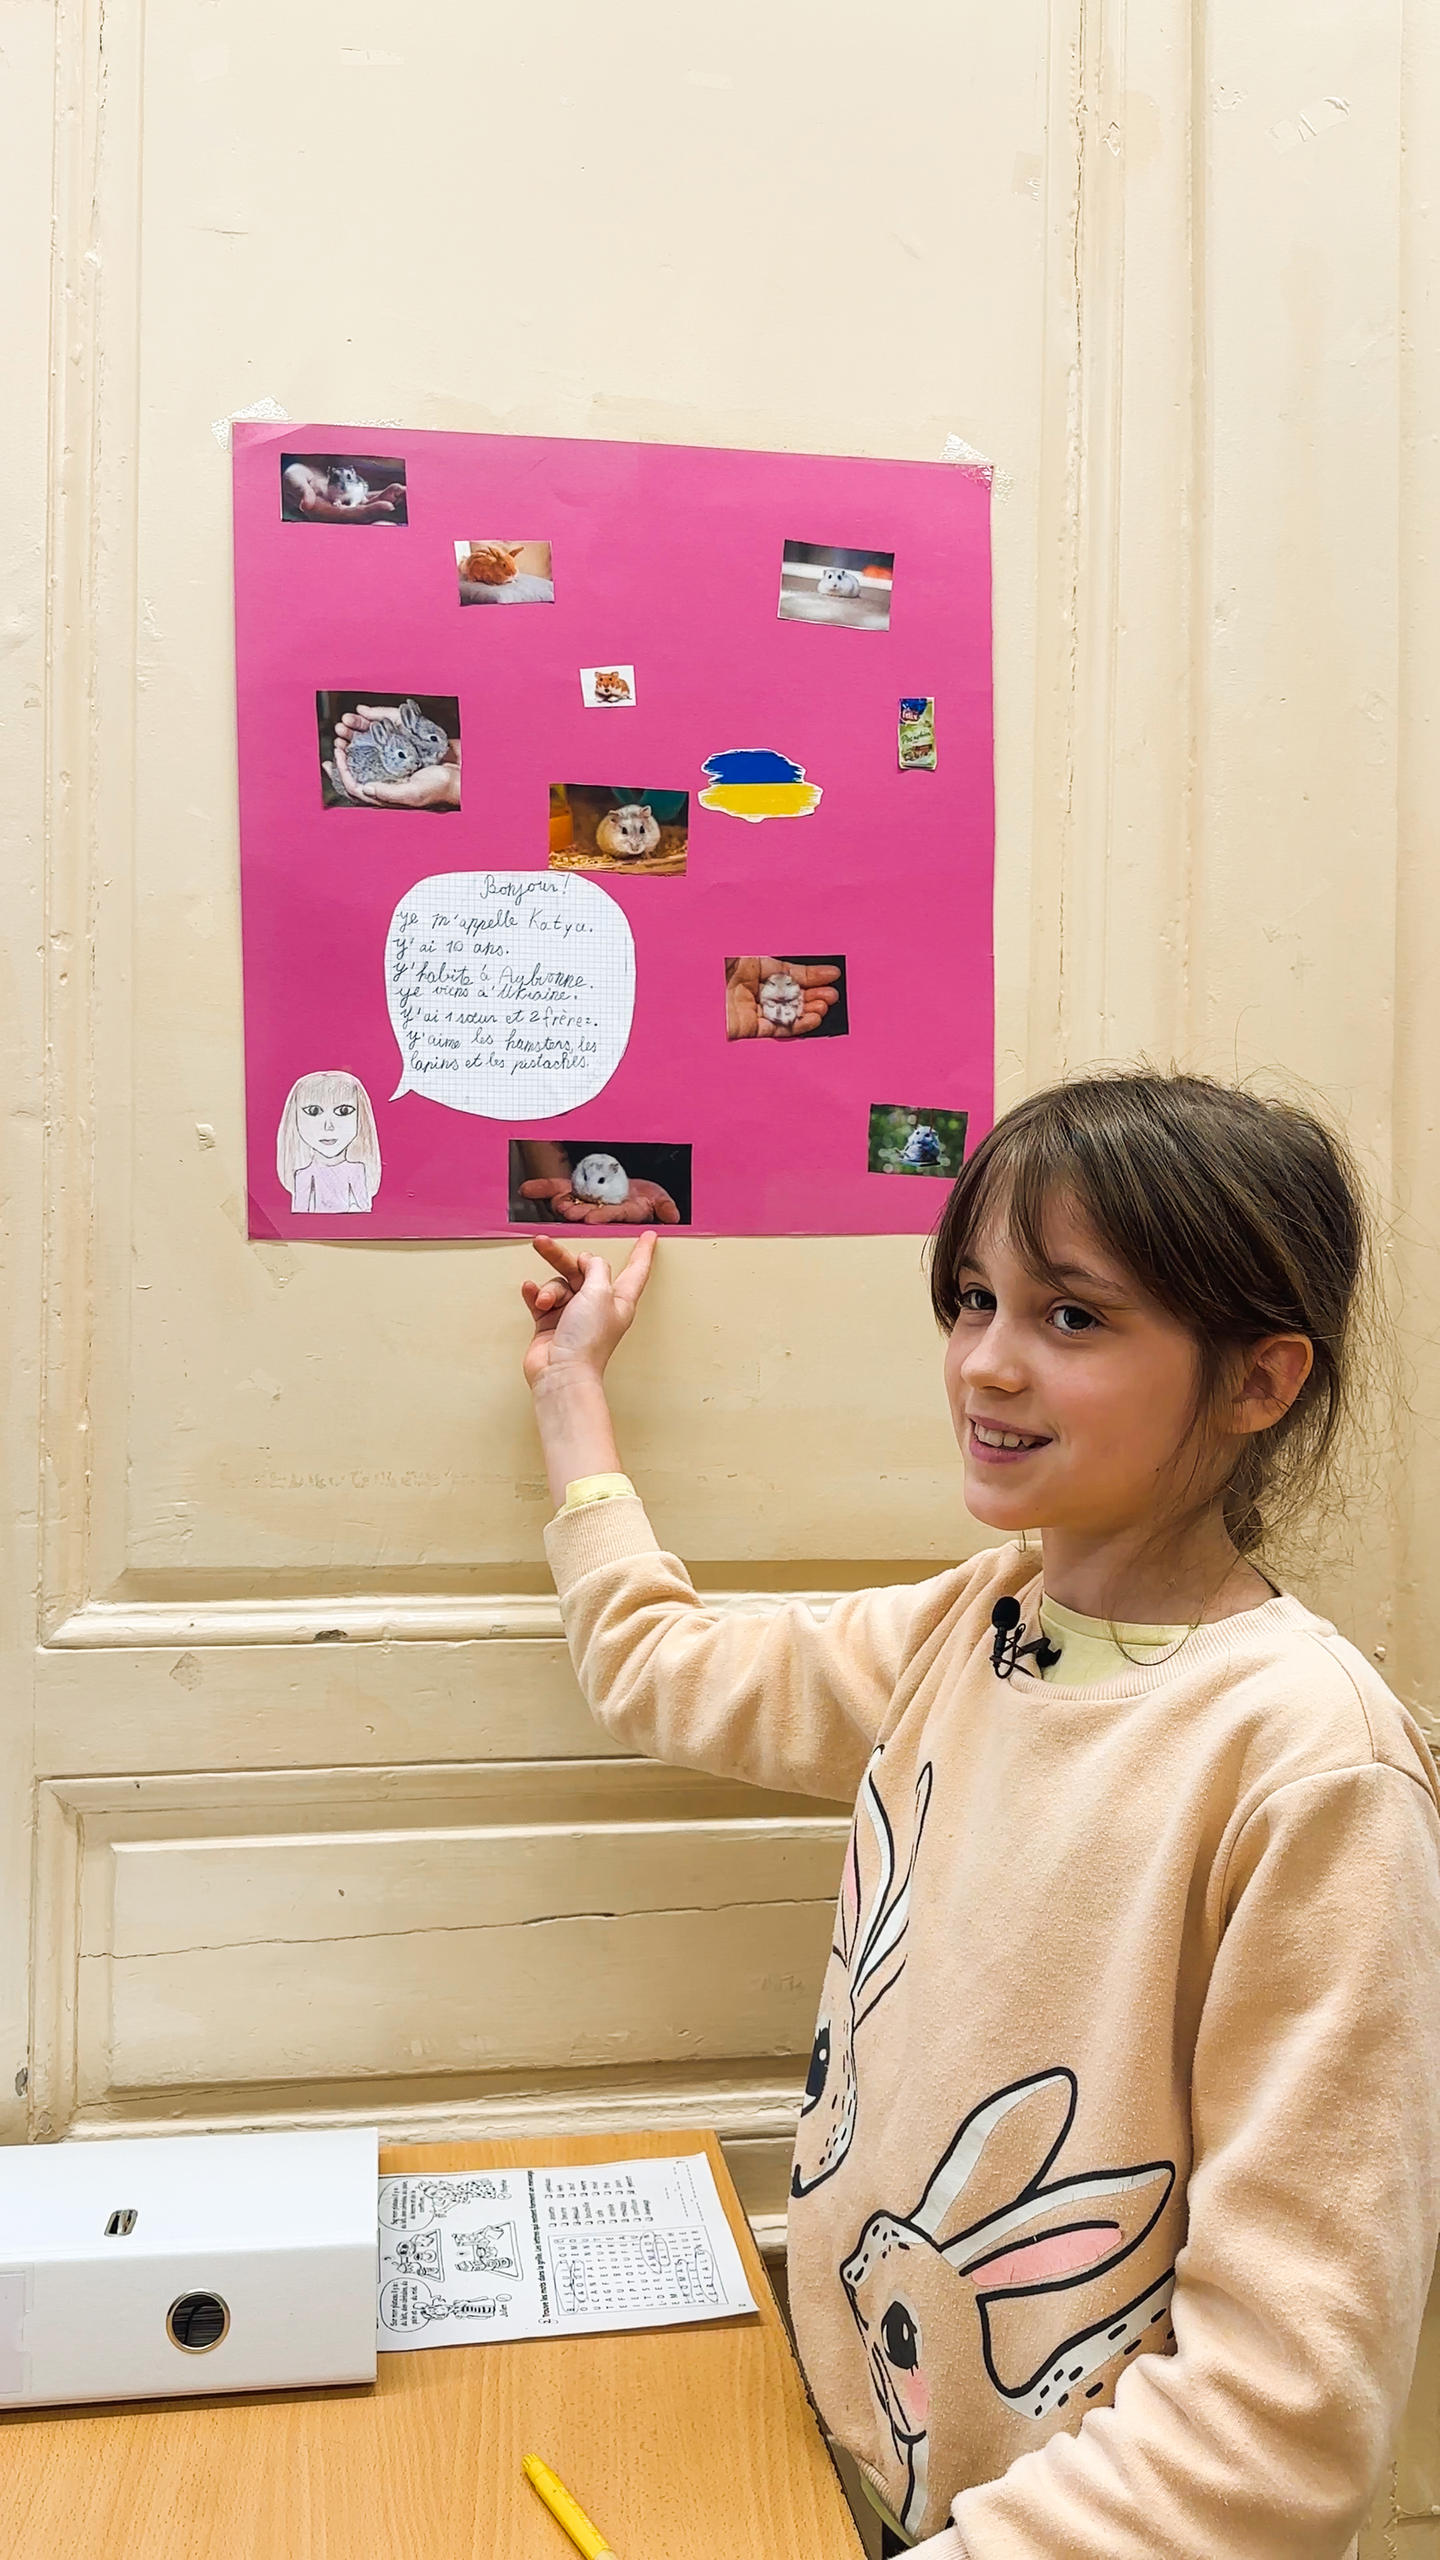 Девочка показывает украшенную ею доску с изображениями хомячков, украинского флага и рассказа о себе на французском языке